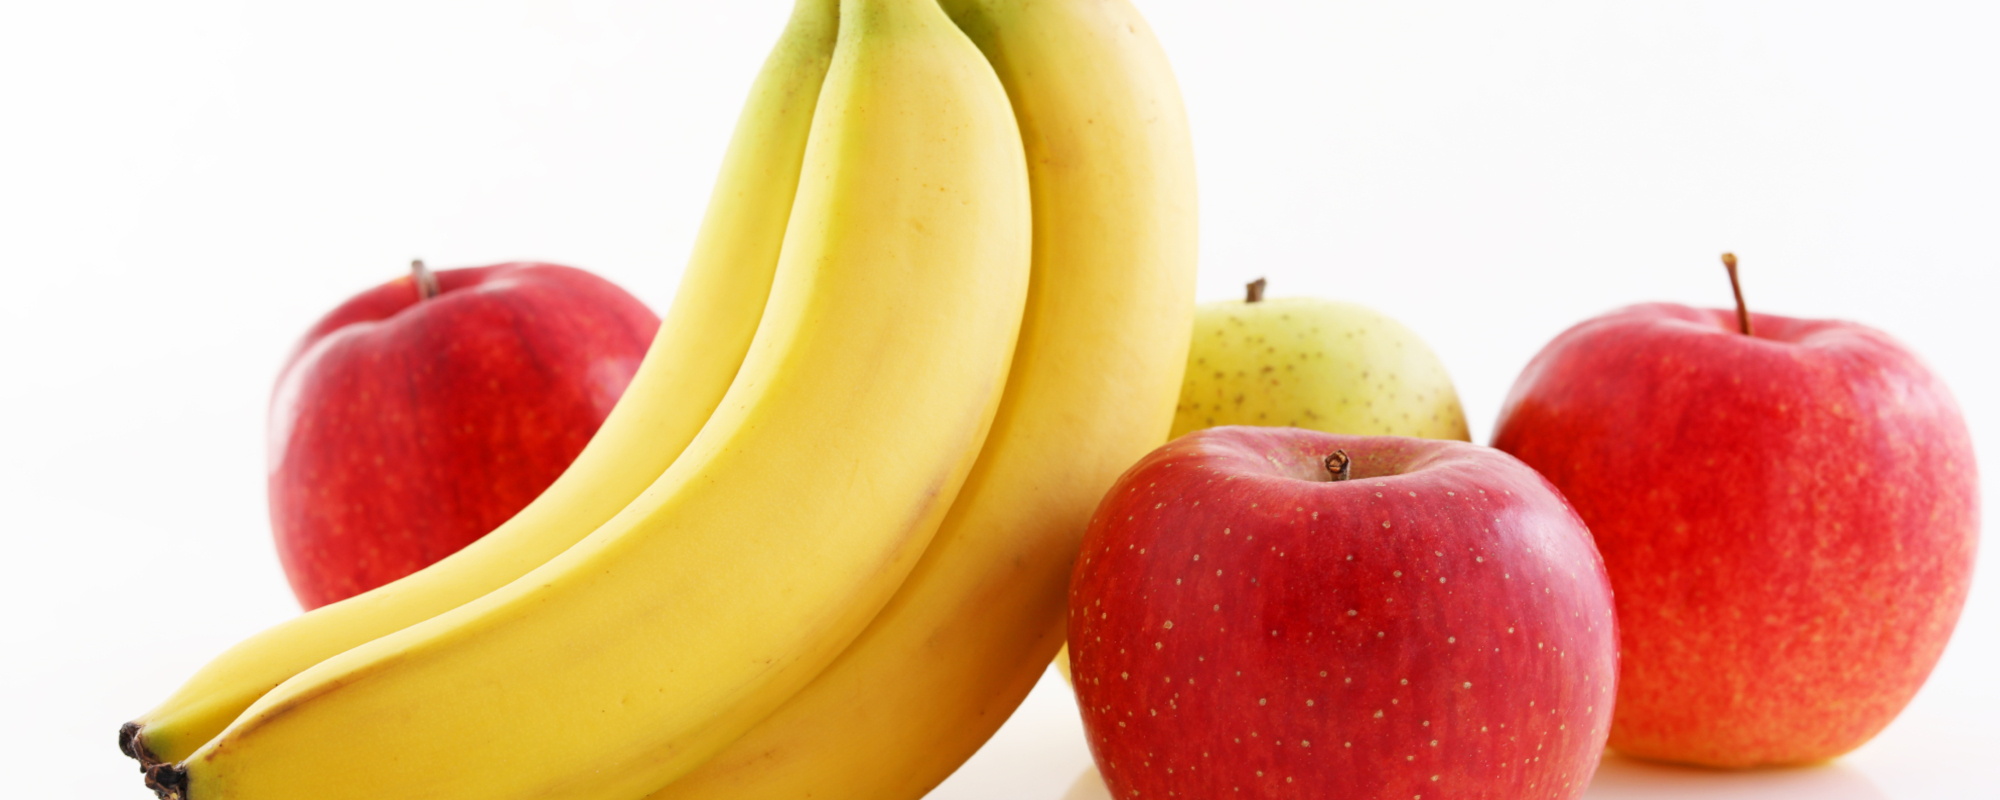 Behind the Tongue-Twisting Song “Apples and Bananas”